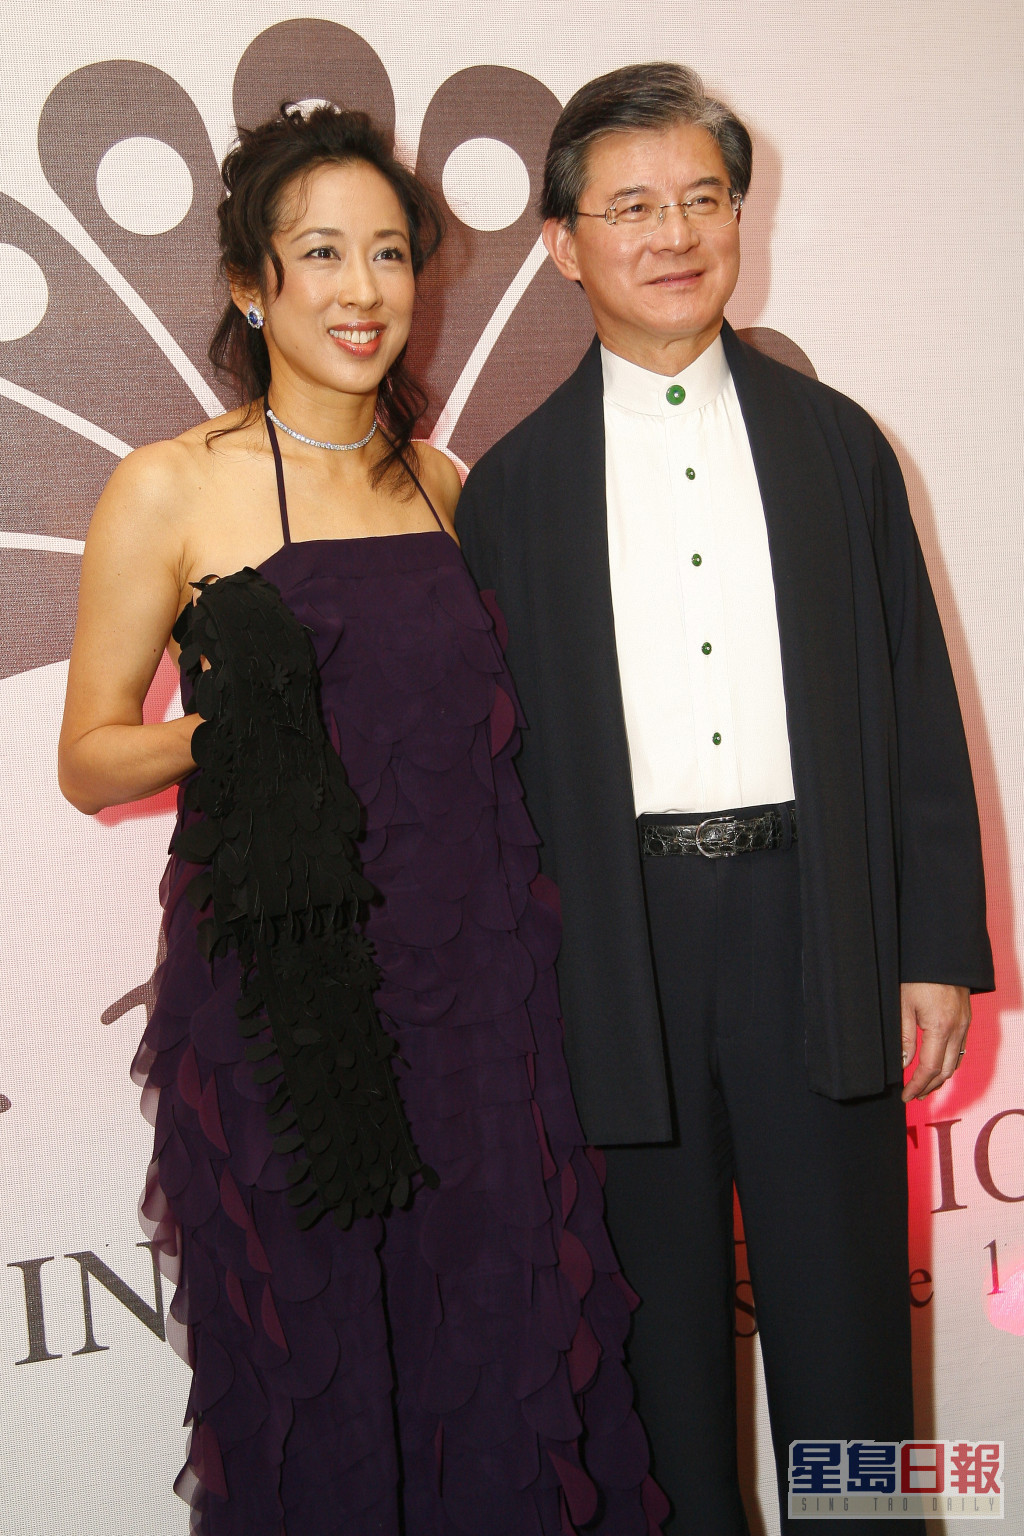 朱玲玲現任丈夫羅康瑞，為瑞安集團董事長。